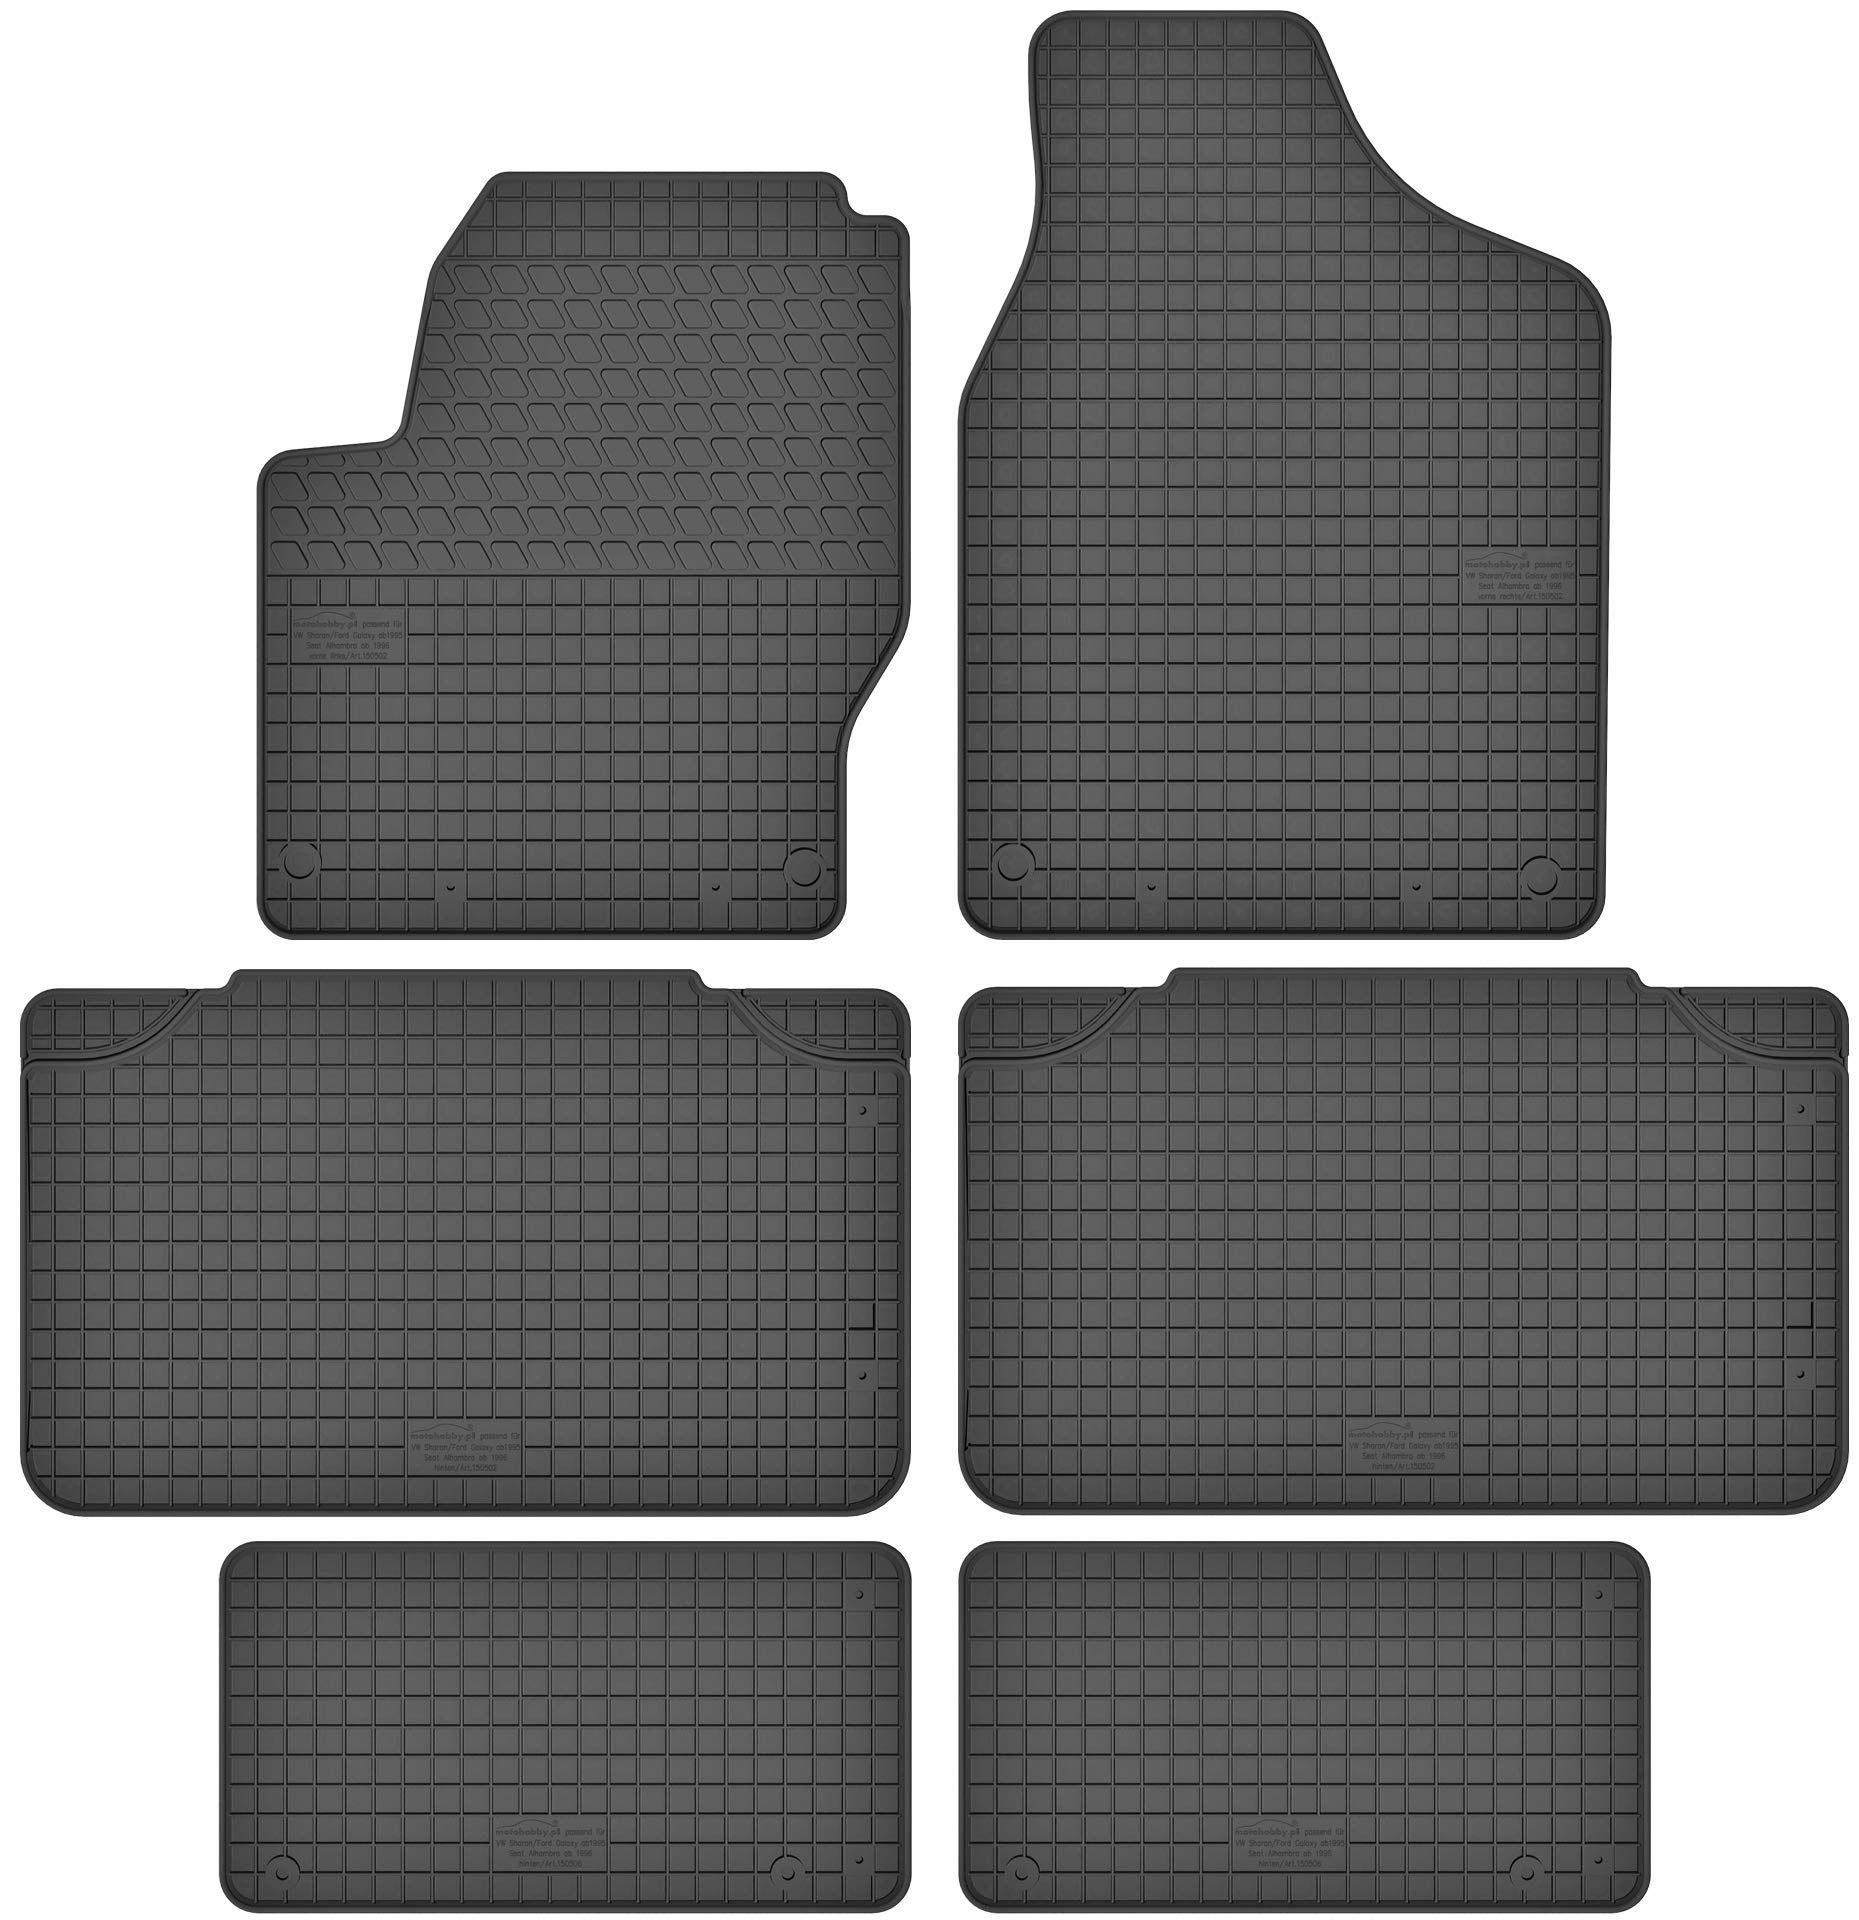 Gummimatten Gummi Fußmatten Satz für Ford Galaxy MK1 (95-06) / VW Volkswagen Sharan I (95-10) / Seat Alhambra I (95-10) - für 7 Personen - Passgenau